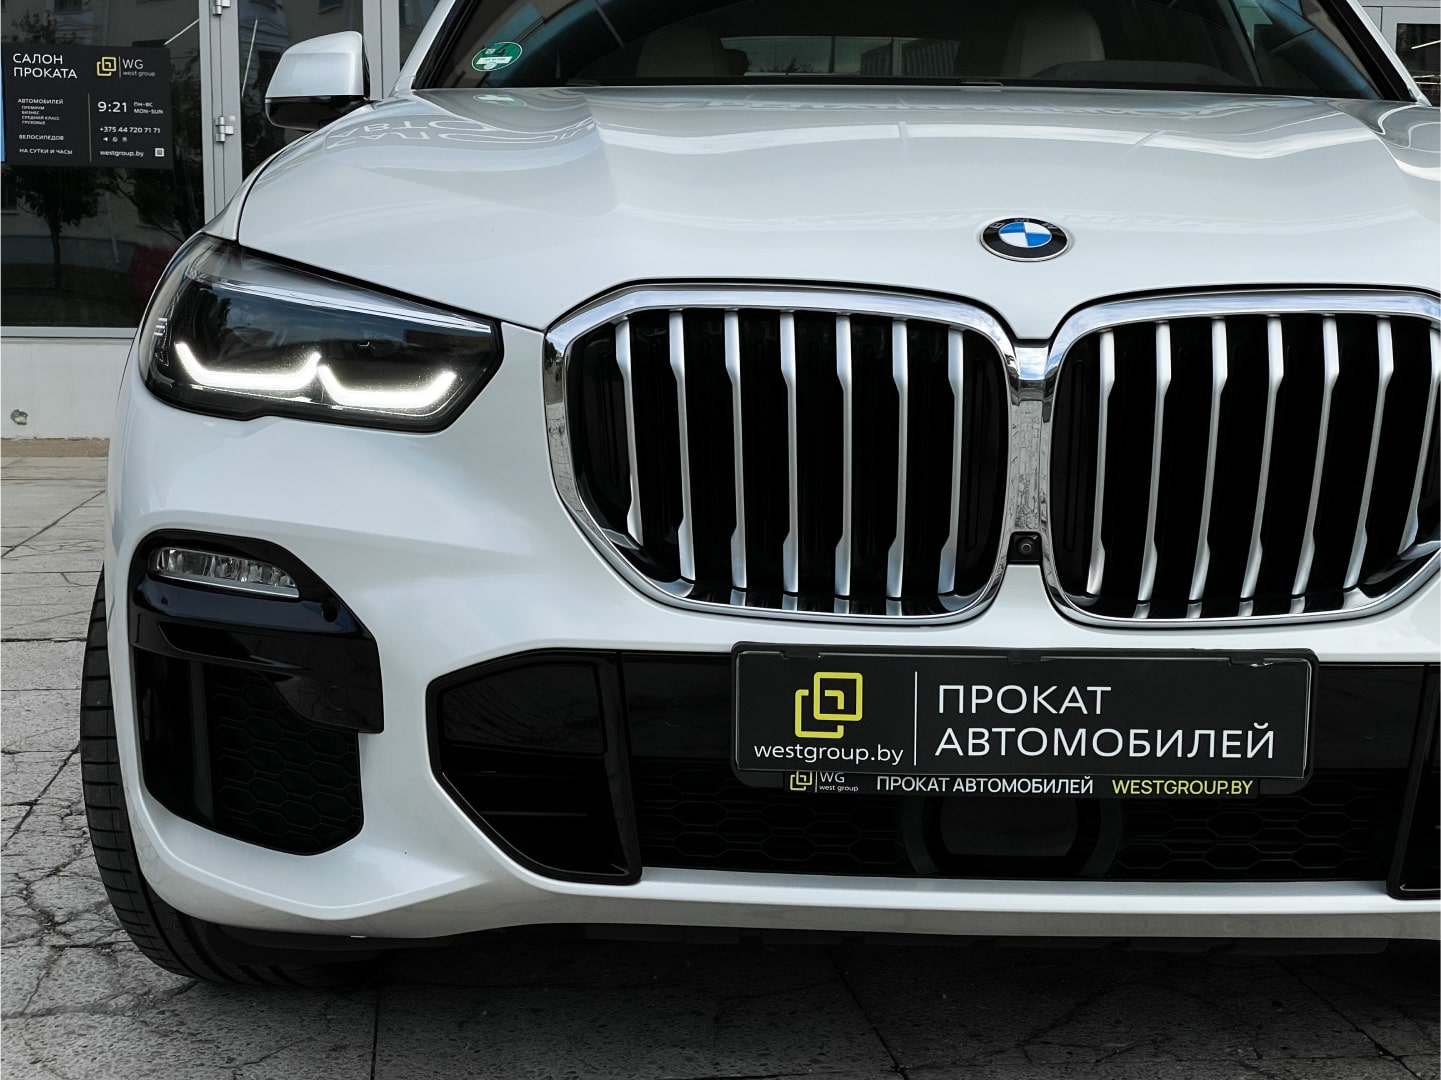 Аренда  BMW X5 G05 xDrive 30d AT M Sport  6 класса 2020 года в городе Минск от 254 $/сутки,  двигатель: ДТ , объем 3.0 литров, КАСКО (Мультидрайв), без водителя, вид 4 - West Group